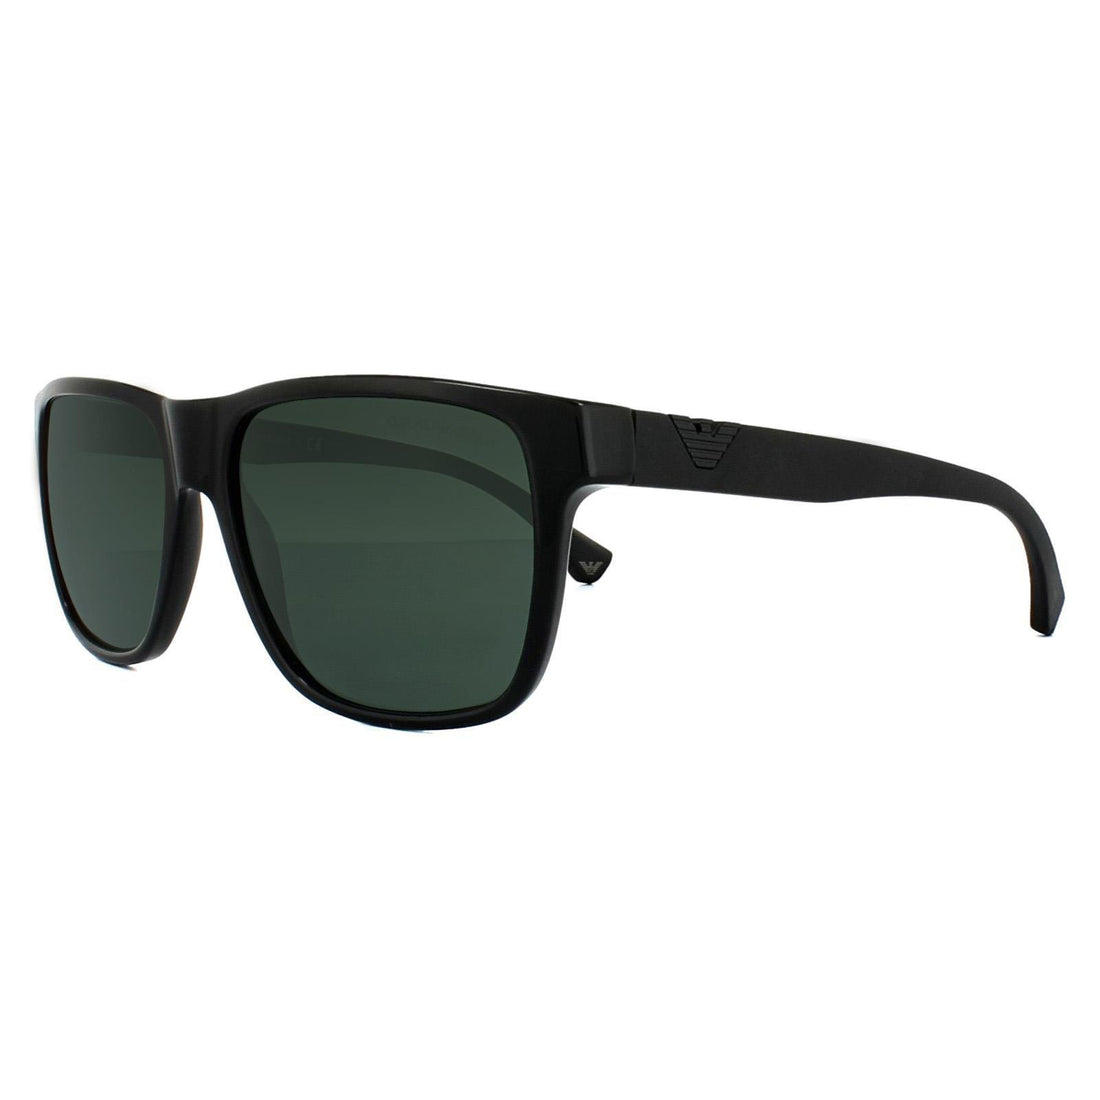 Emporio Armani Sunglasses 4035 501771 Black Grey Green